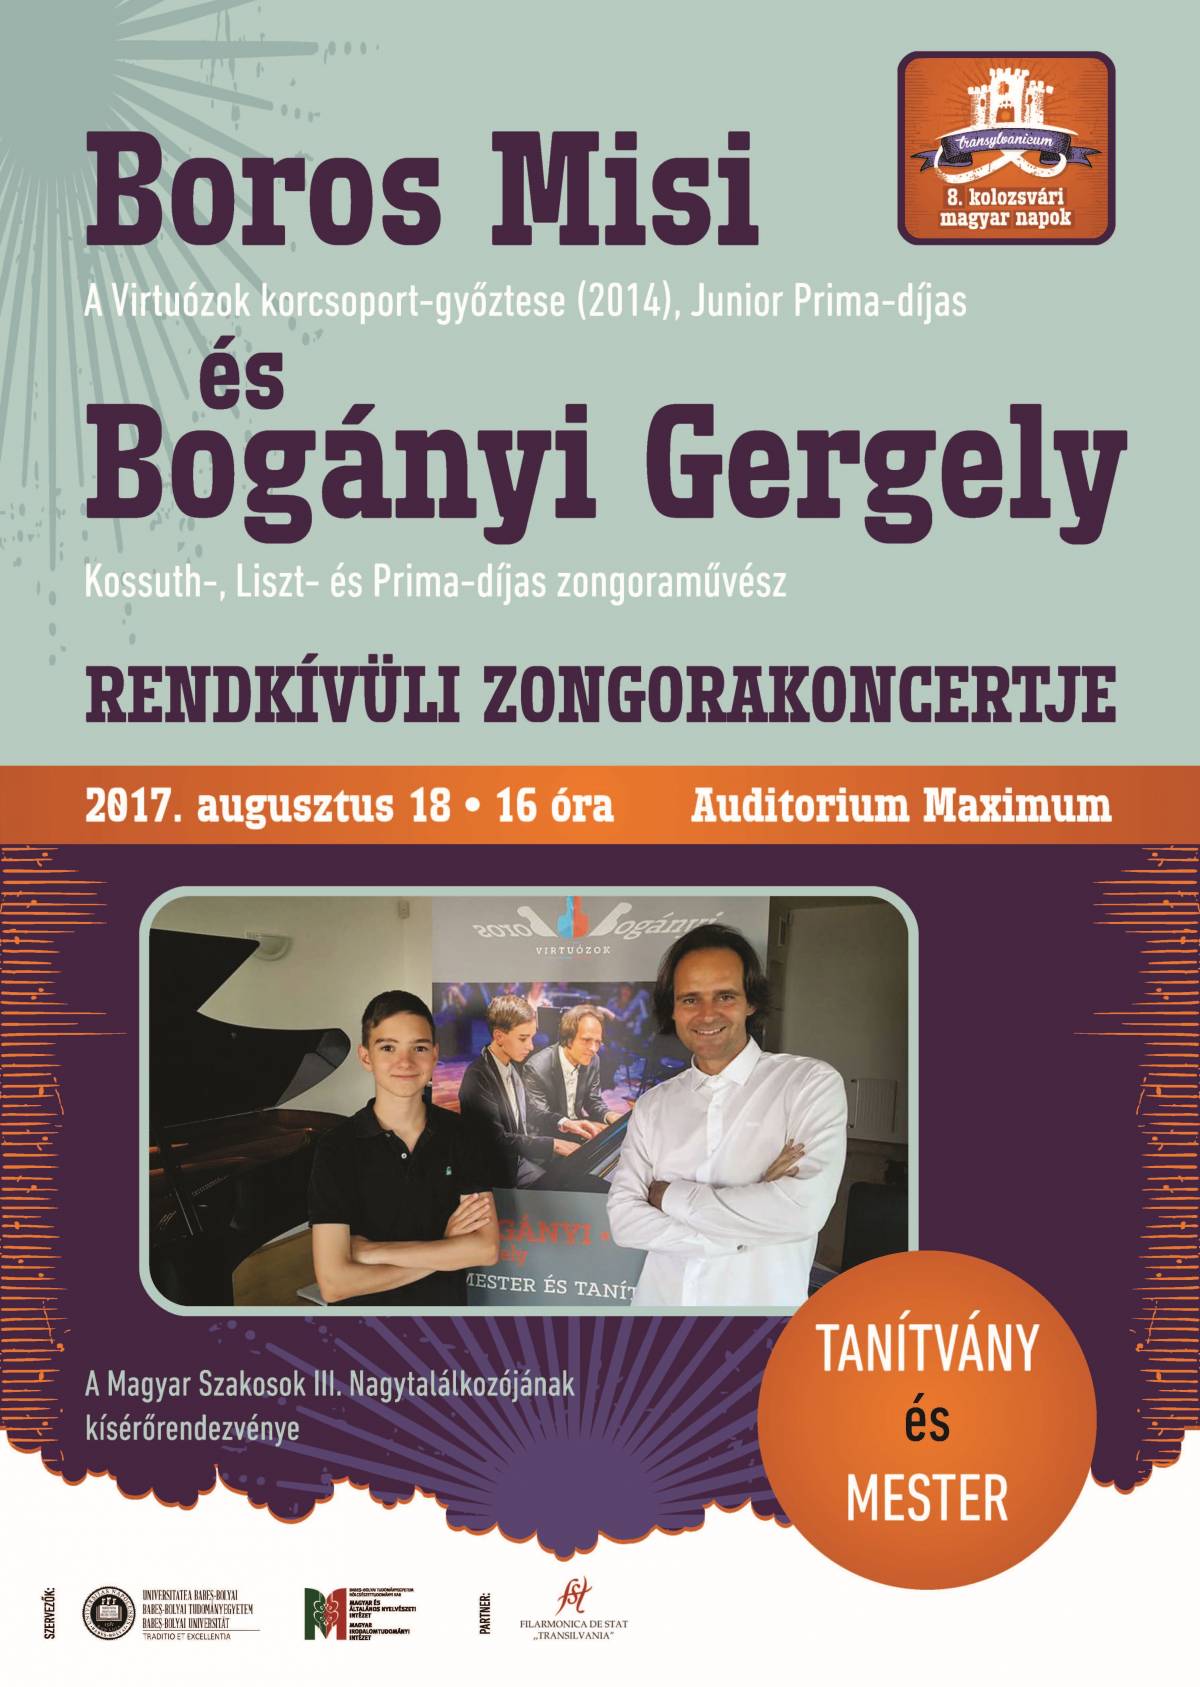 KMN – Magyar szakosok nagytalálkozója, Boros Misi és Bogányi Gergely koncertje Kolozsváron